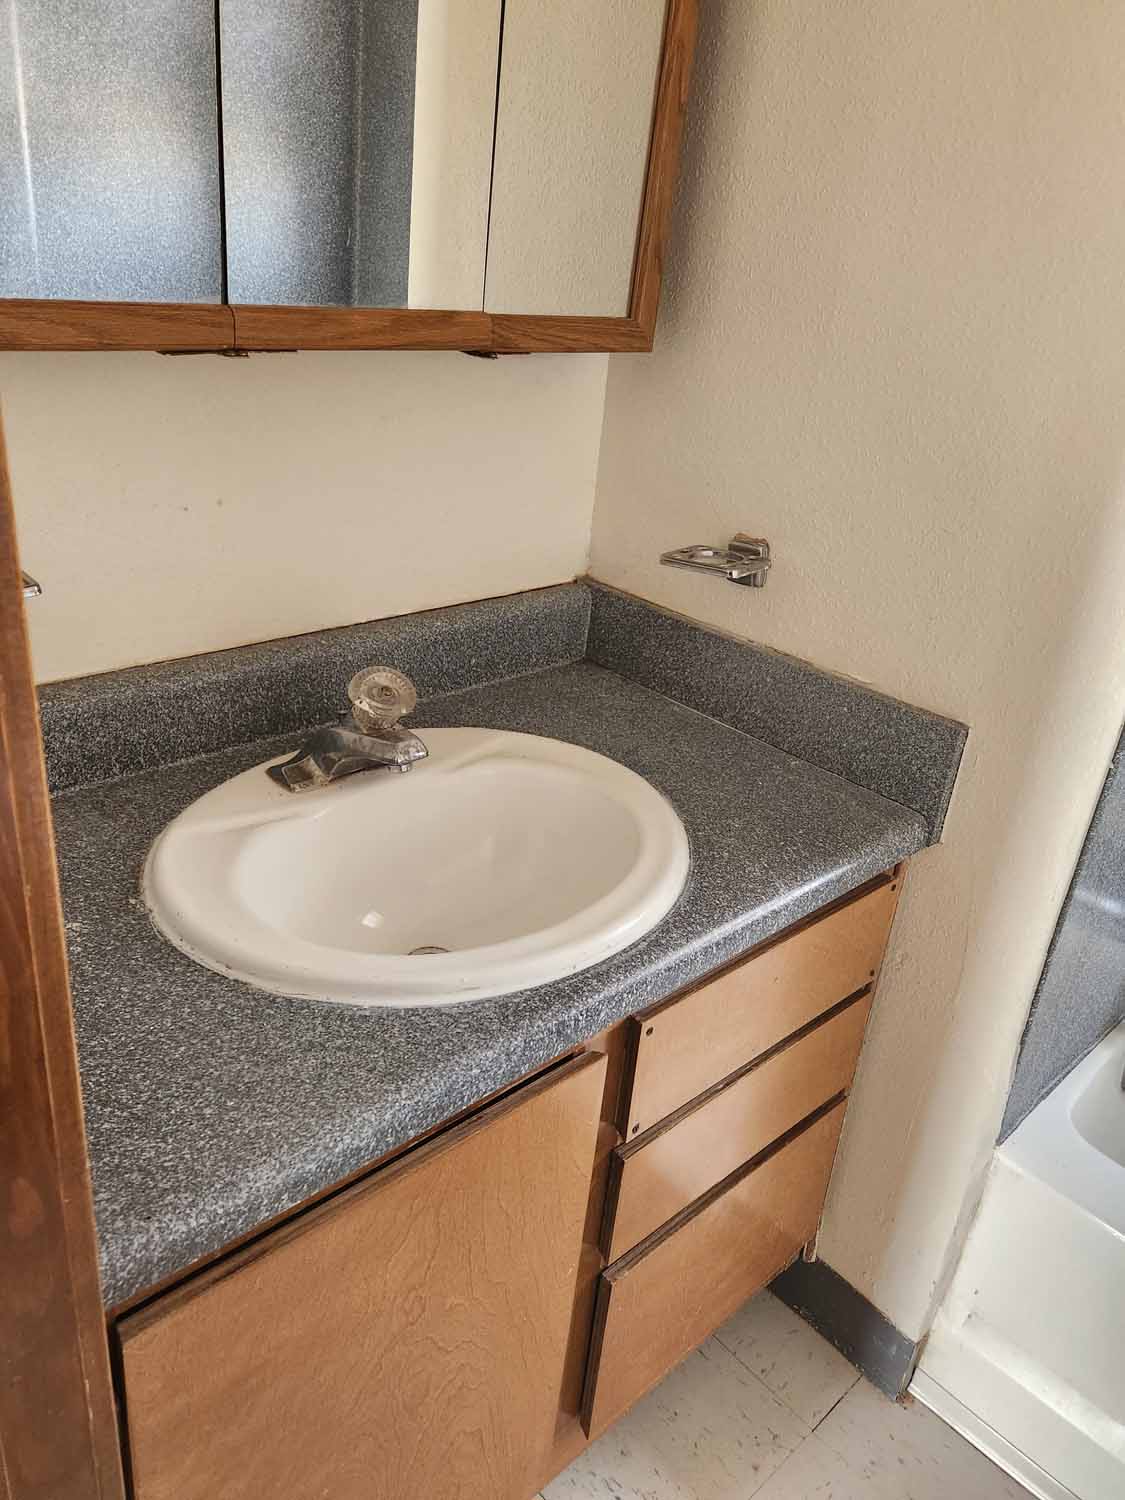 A bathroom sink.